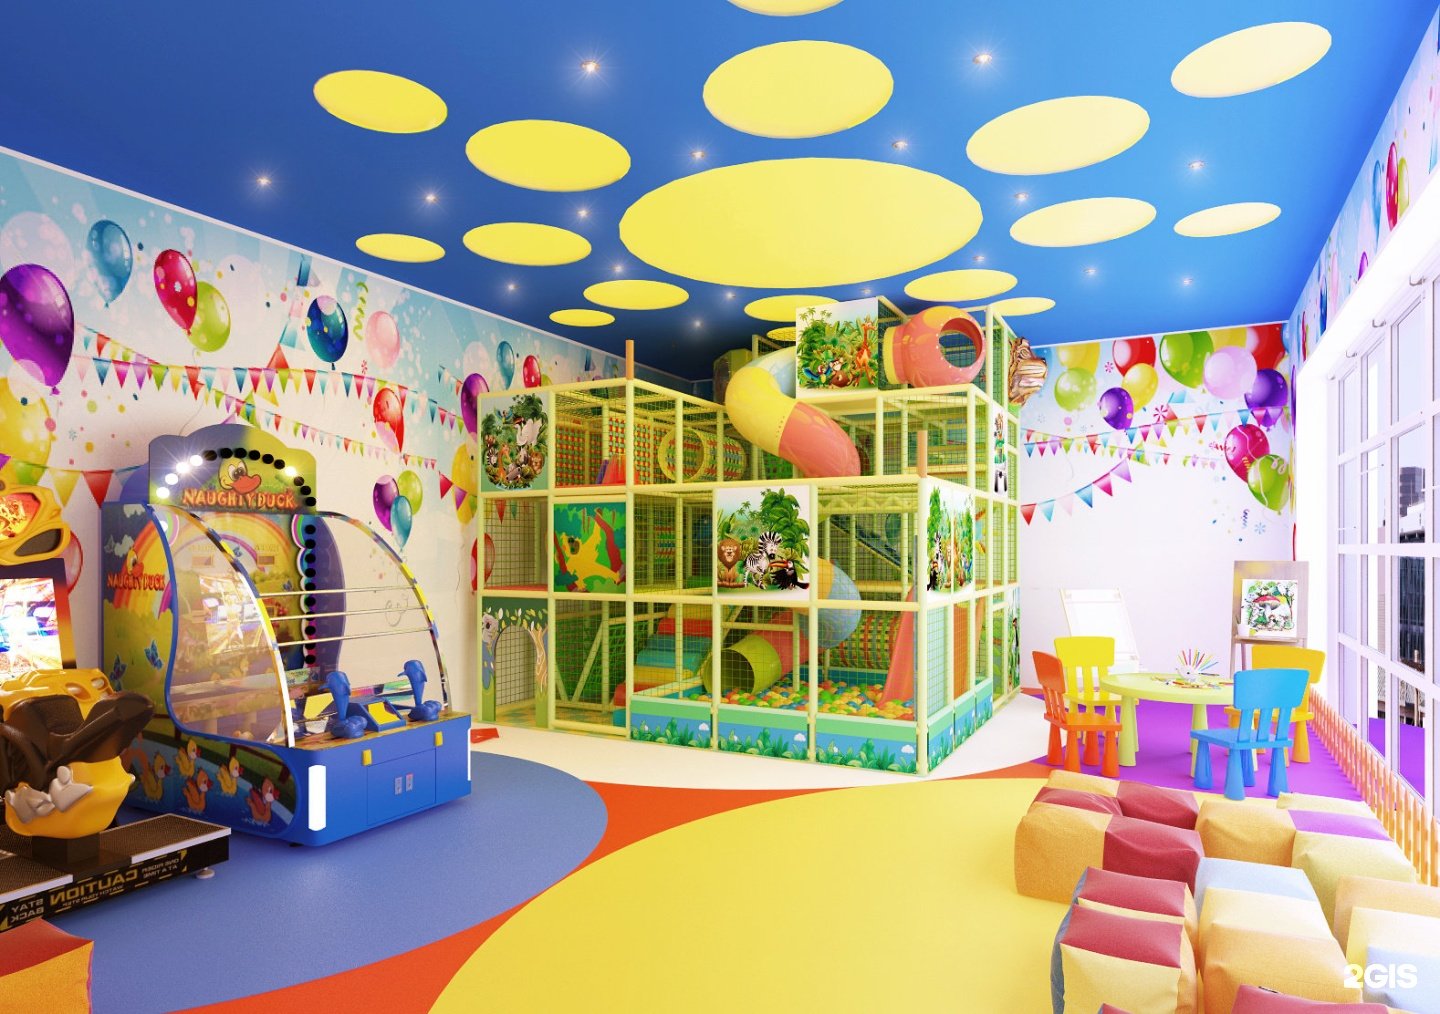 Сколько игровых зон. Детская игровая комната. Развлекательная комната для детей. Игровая комната для детей. Детский центр игровая комната.